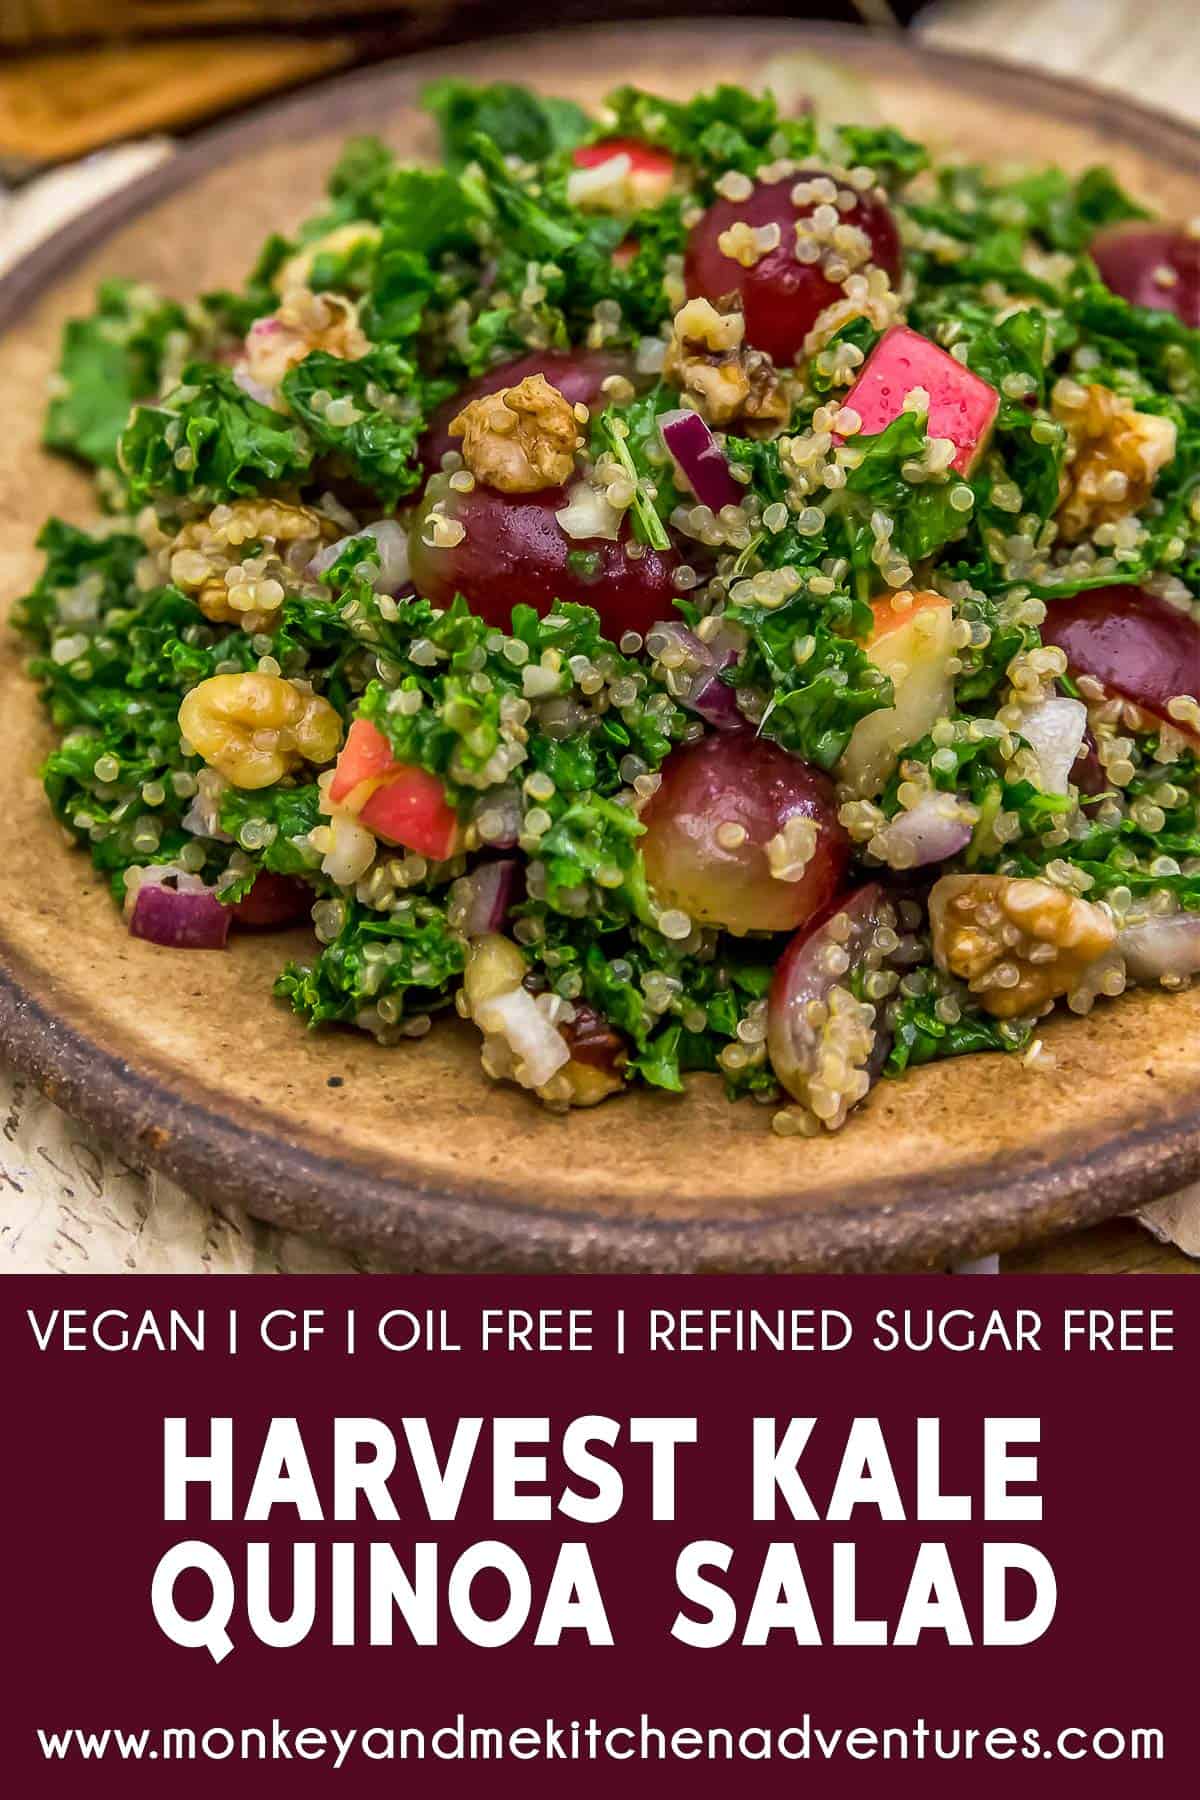 Harvest Kale Quinoa Salad with text description